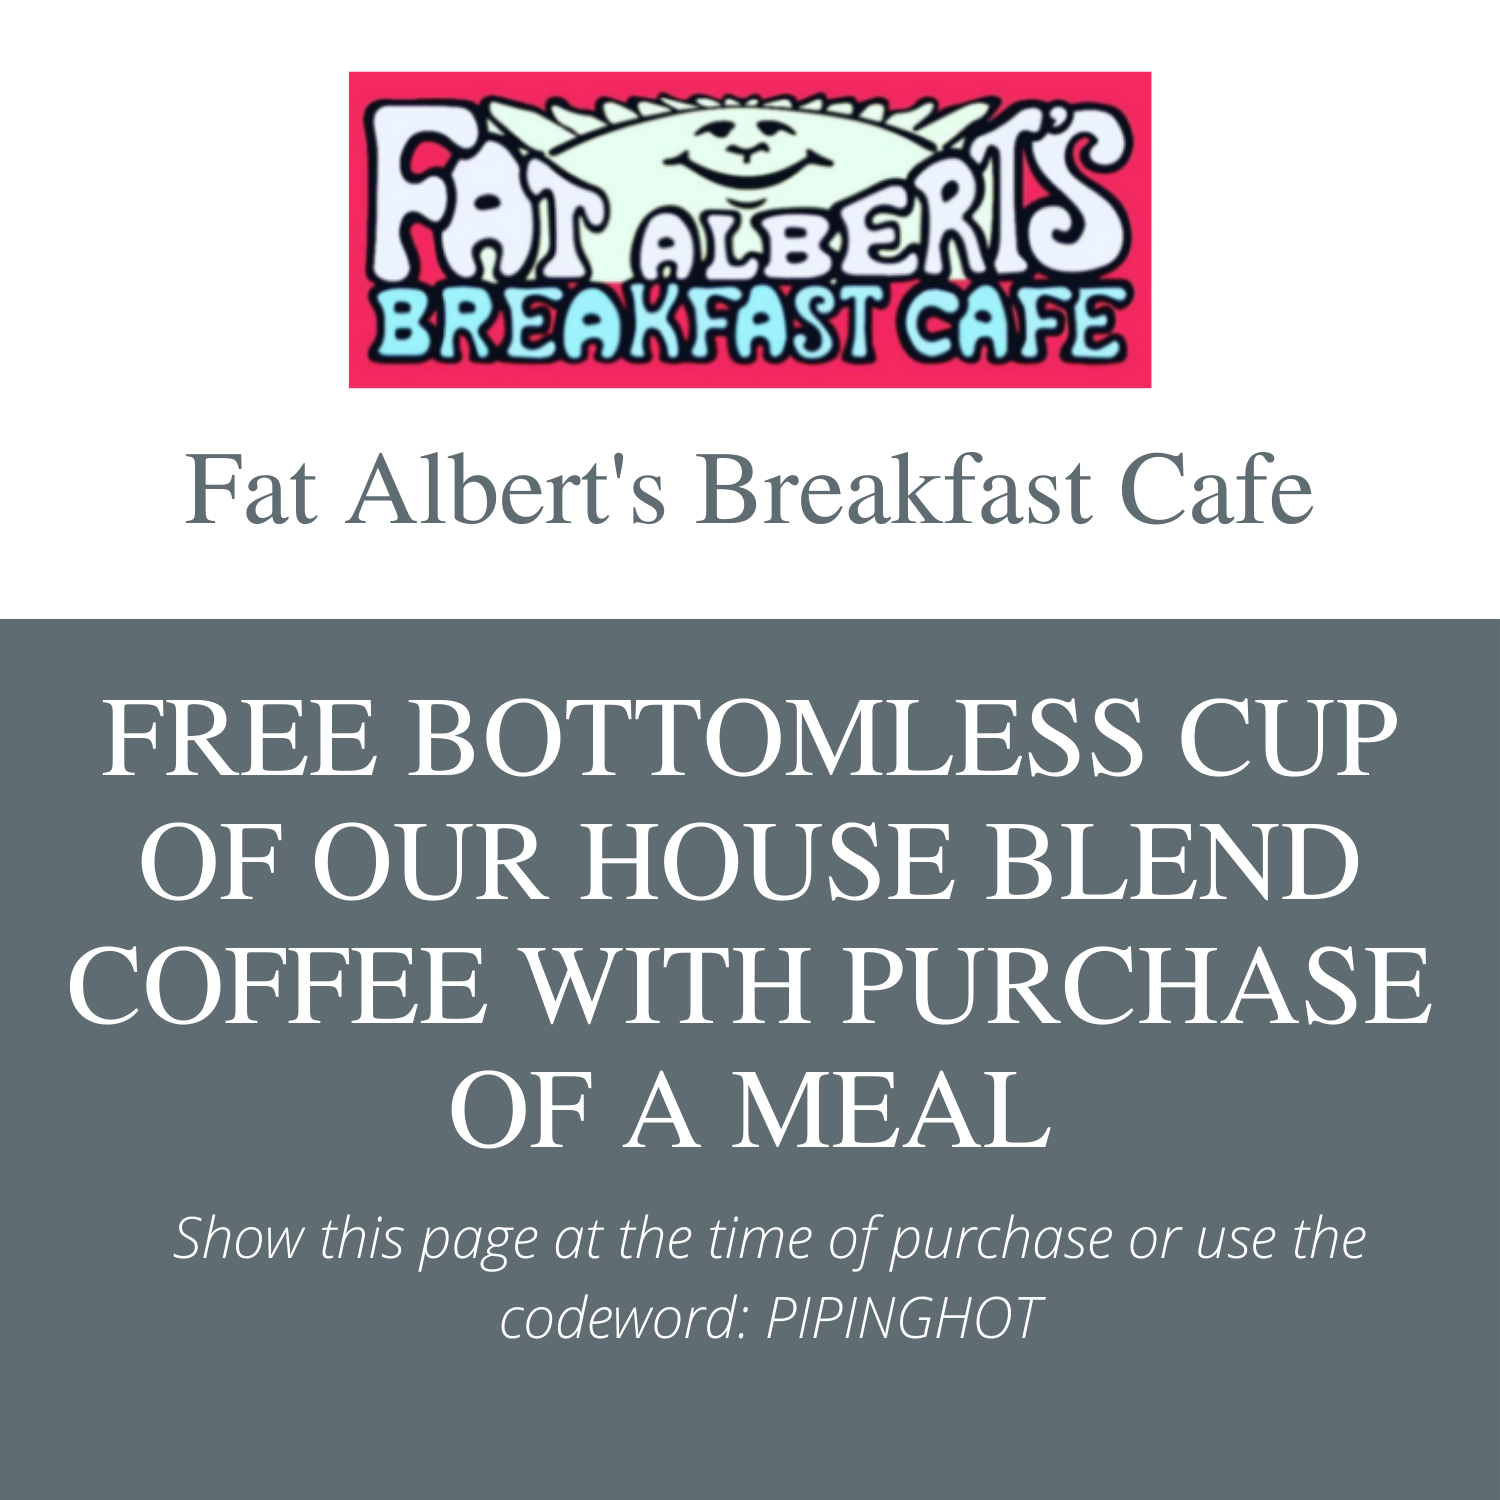 Fat Albert's Breakfast Cafe